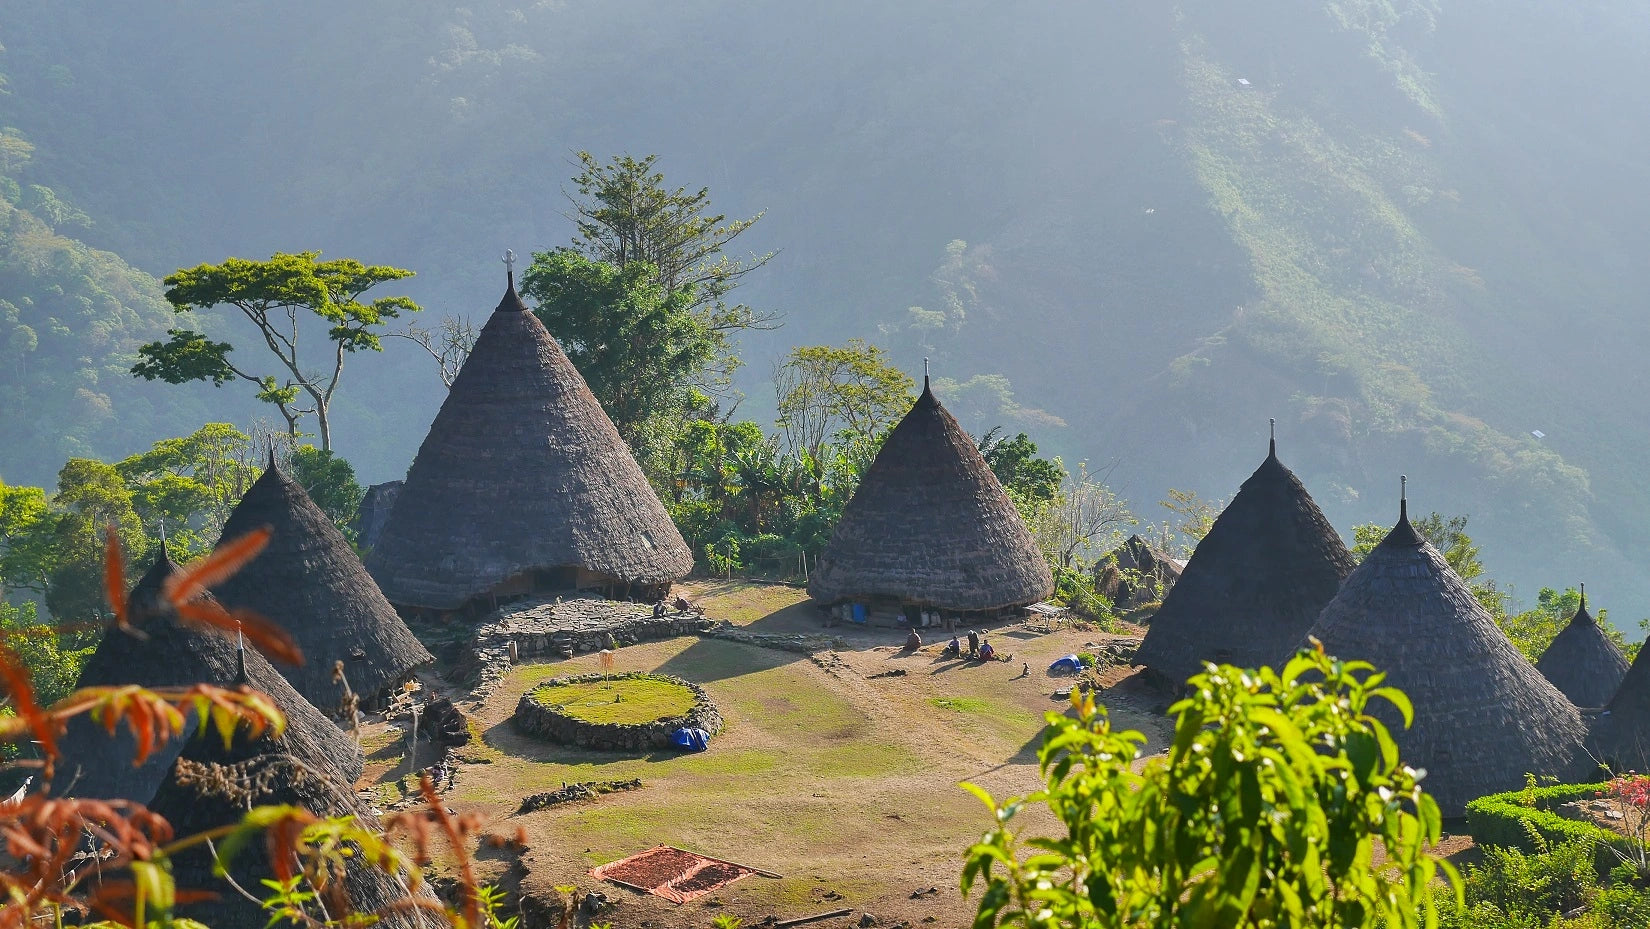 Desa Wae Rebo: Sejarah, Daya Tarik, dan Keunikan